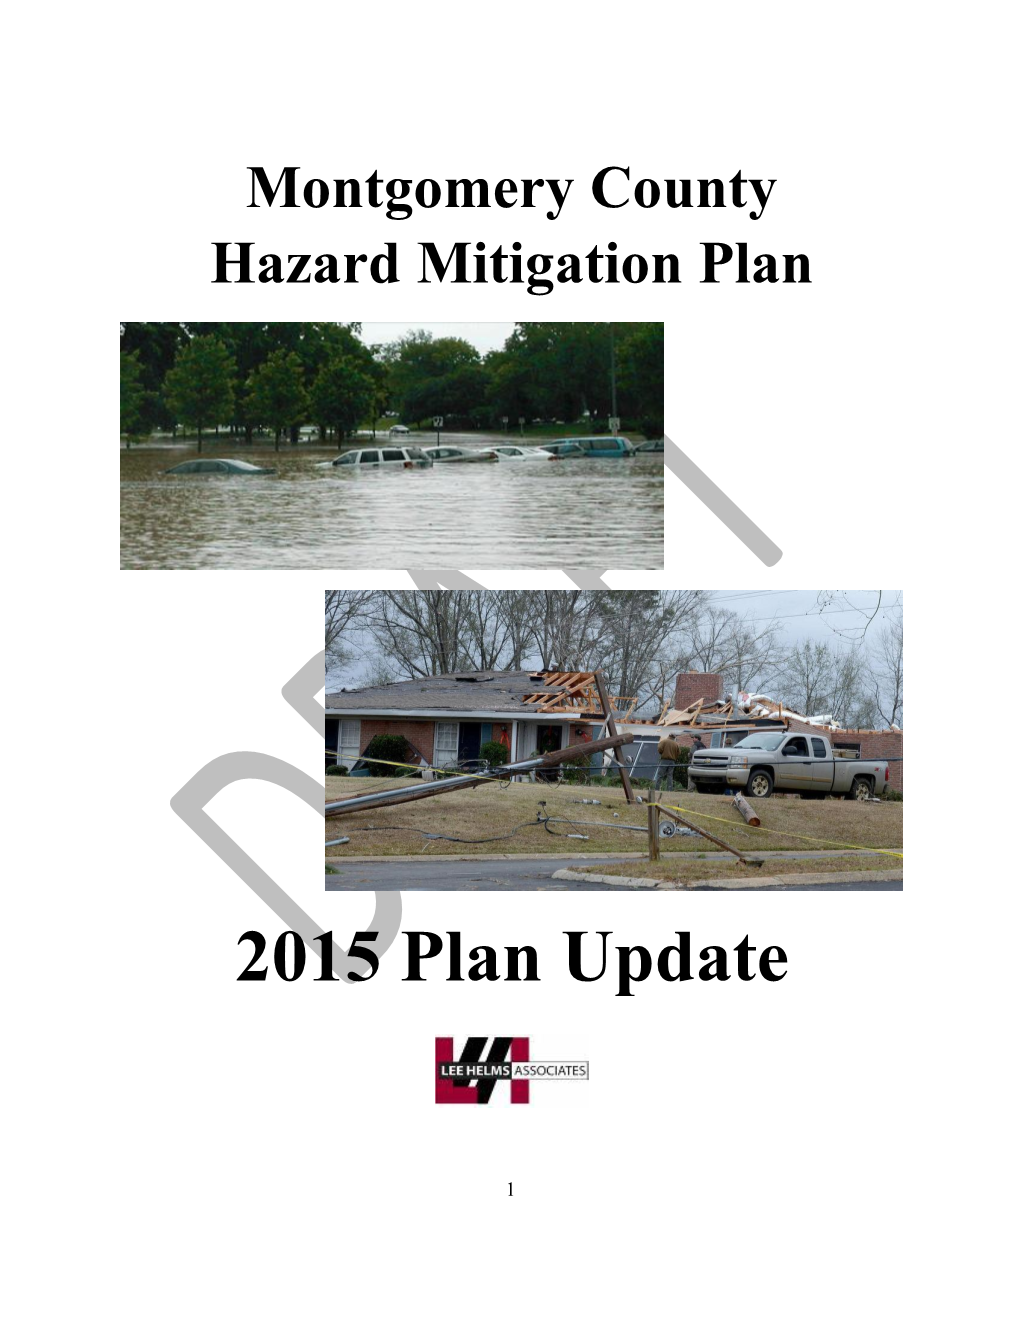 Montgomery County Hazard Mitigation Plan